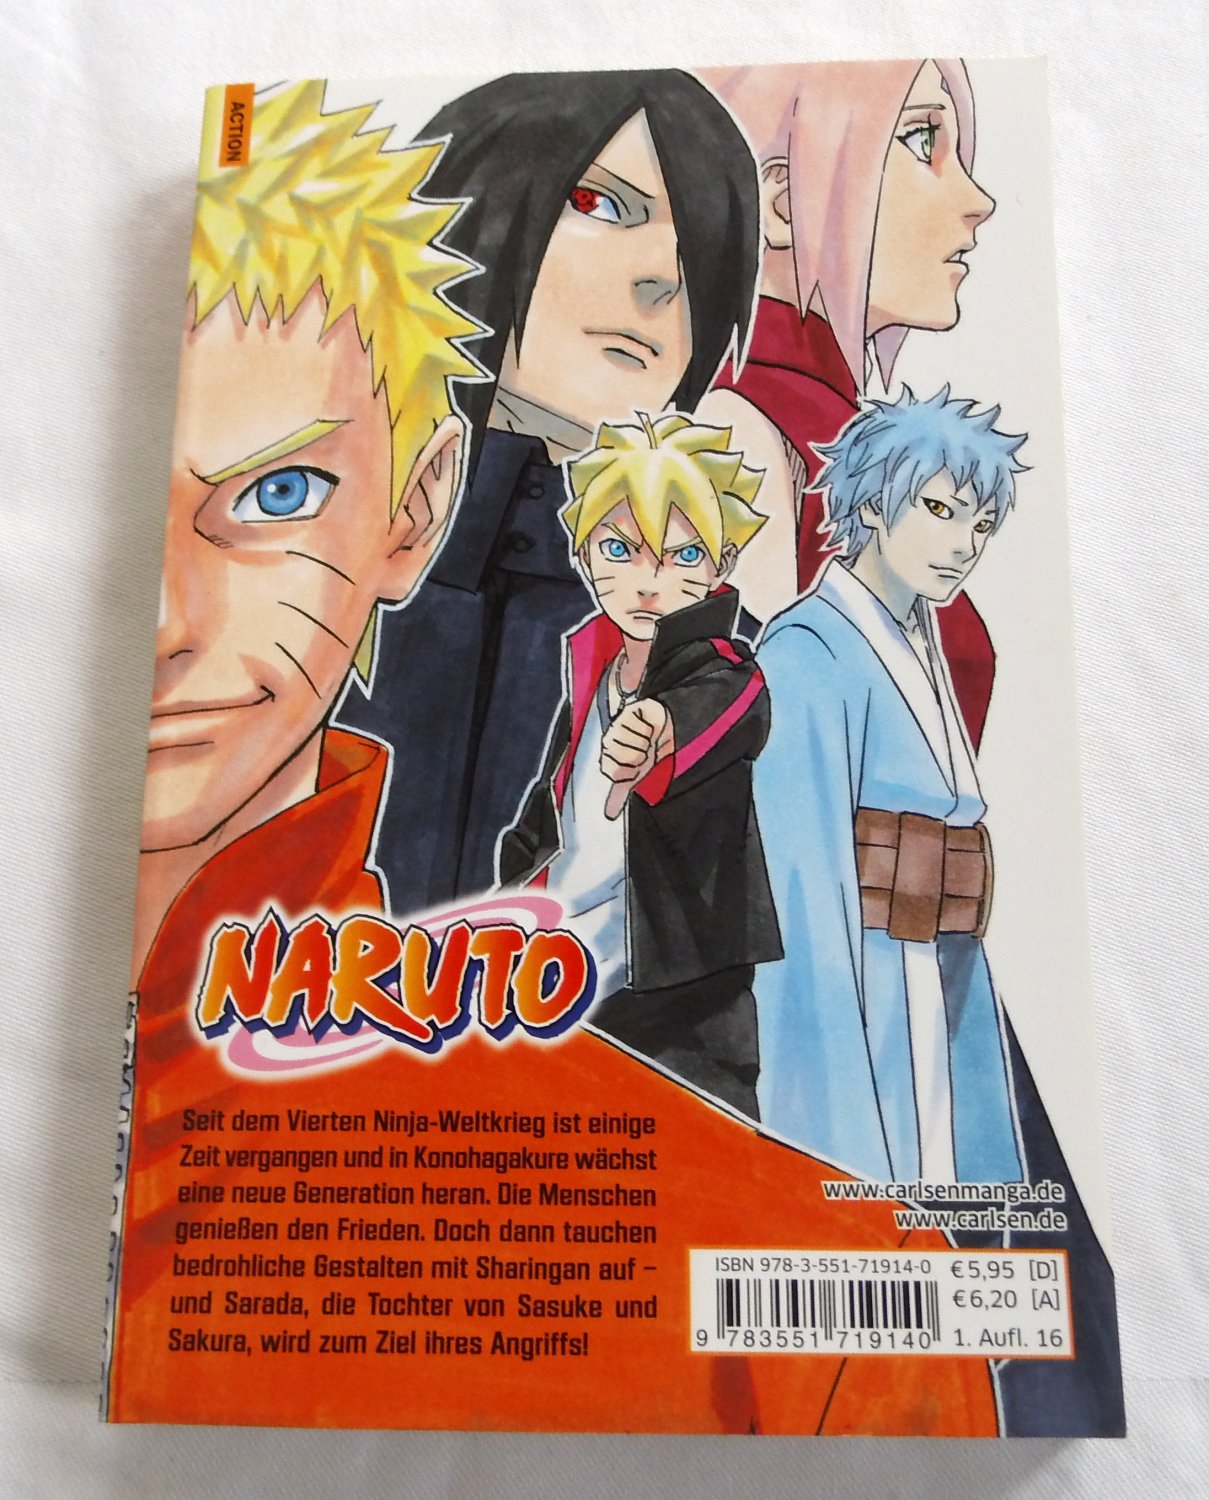 Hokage Der 6 Generation Naruto - Der siebte Hokage und der scharlachrote Frühling …“ (Masashi  Kishimoto) – Buch gebraucht kaufen – A02ySWhY01ZZ6